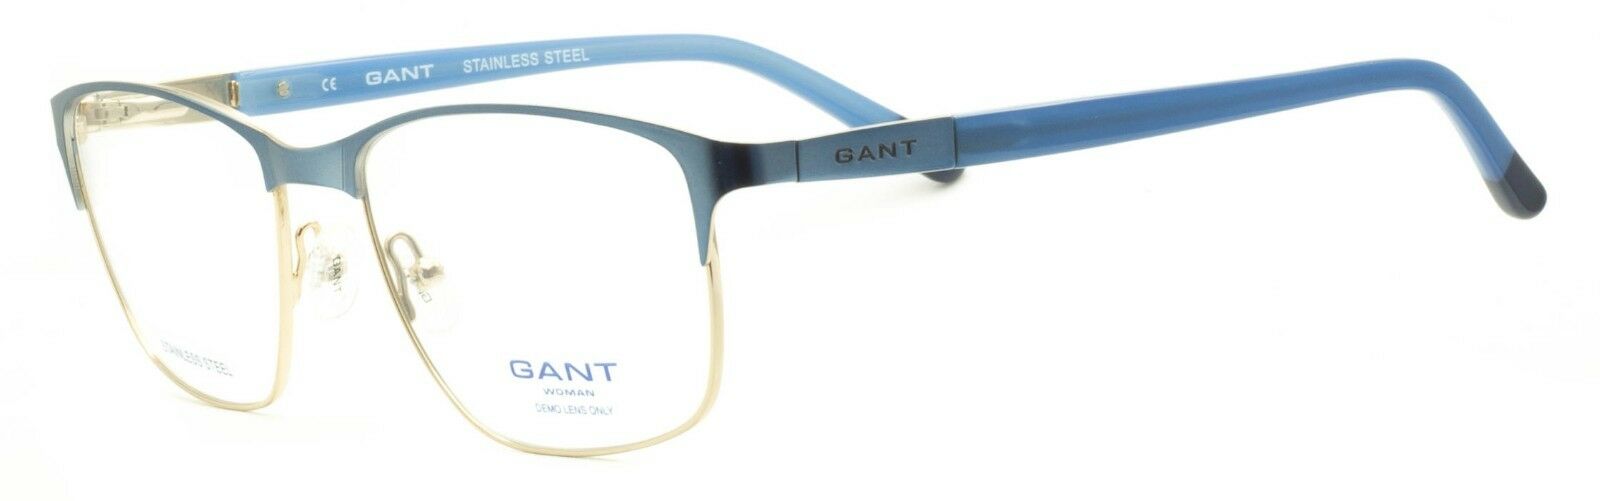 GANT GA4034 085 RX Optical Eyewear FRAMES Glasses Eyeglasses New BNIB - TRUSTED